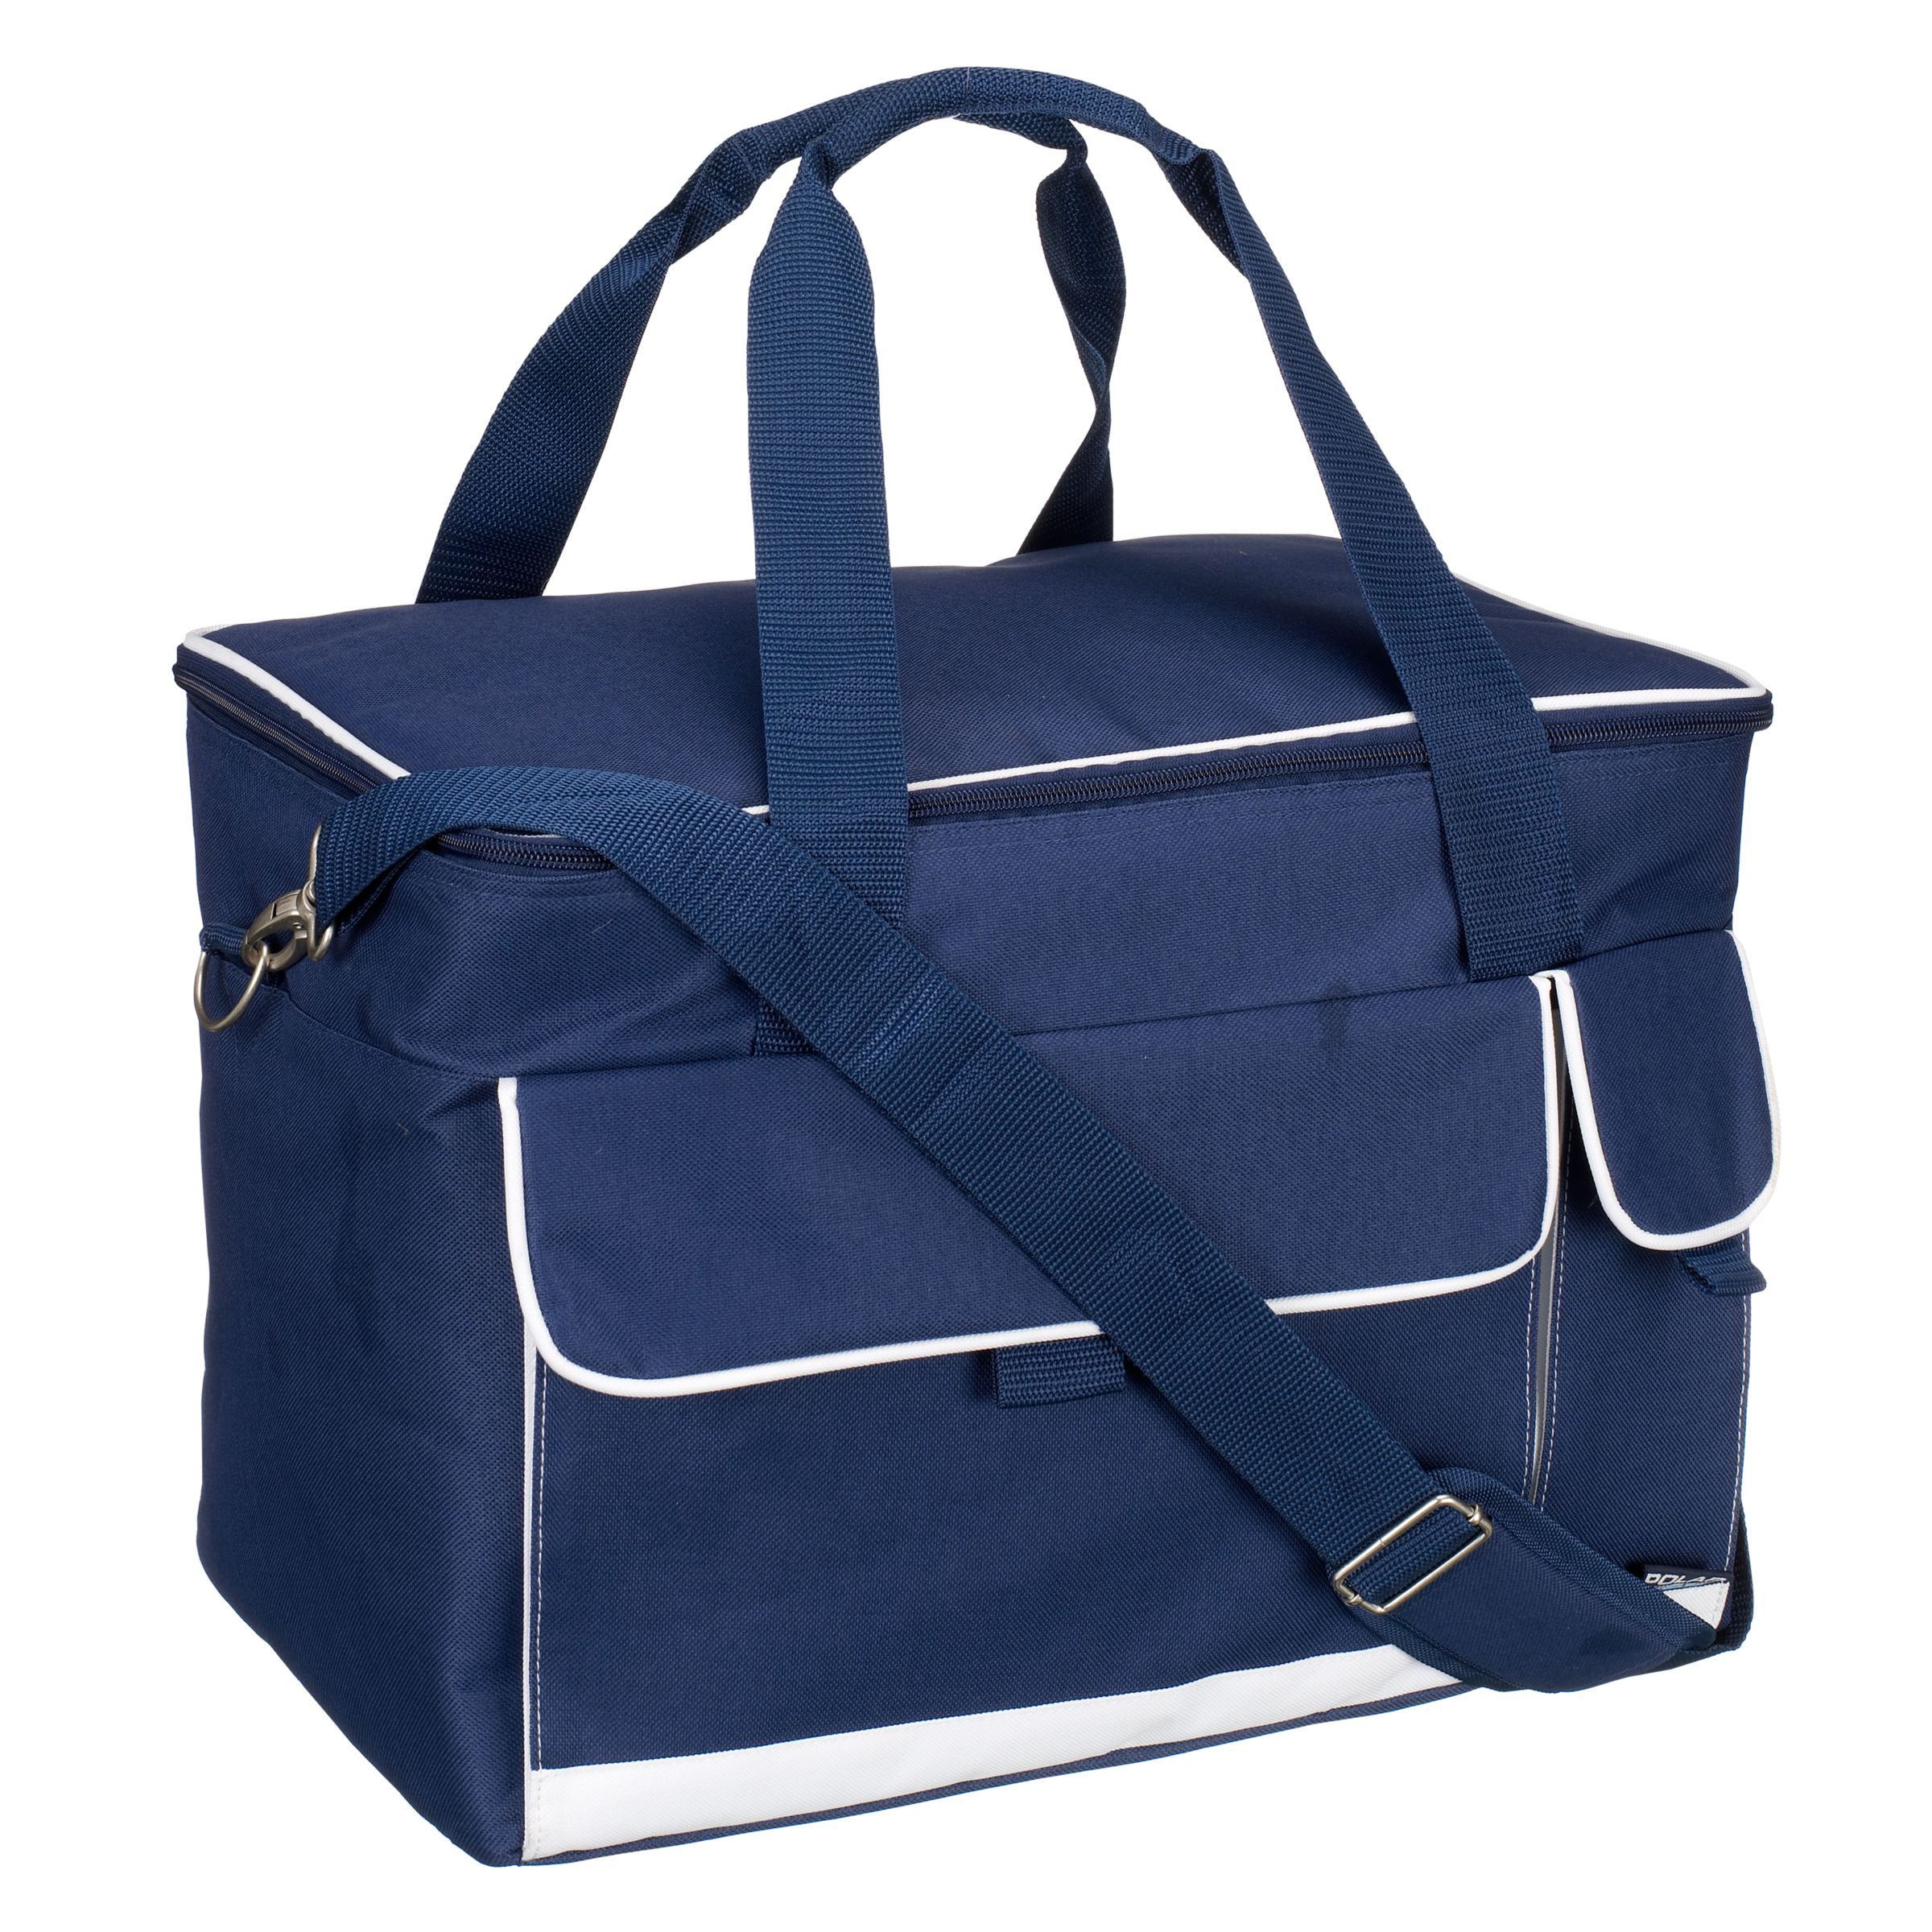 John Lewis Luxury Cooler Bag, Large